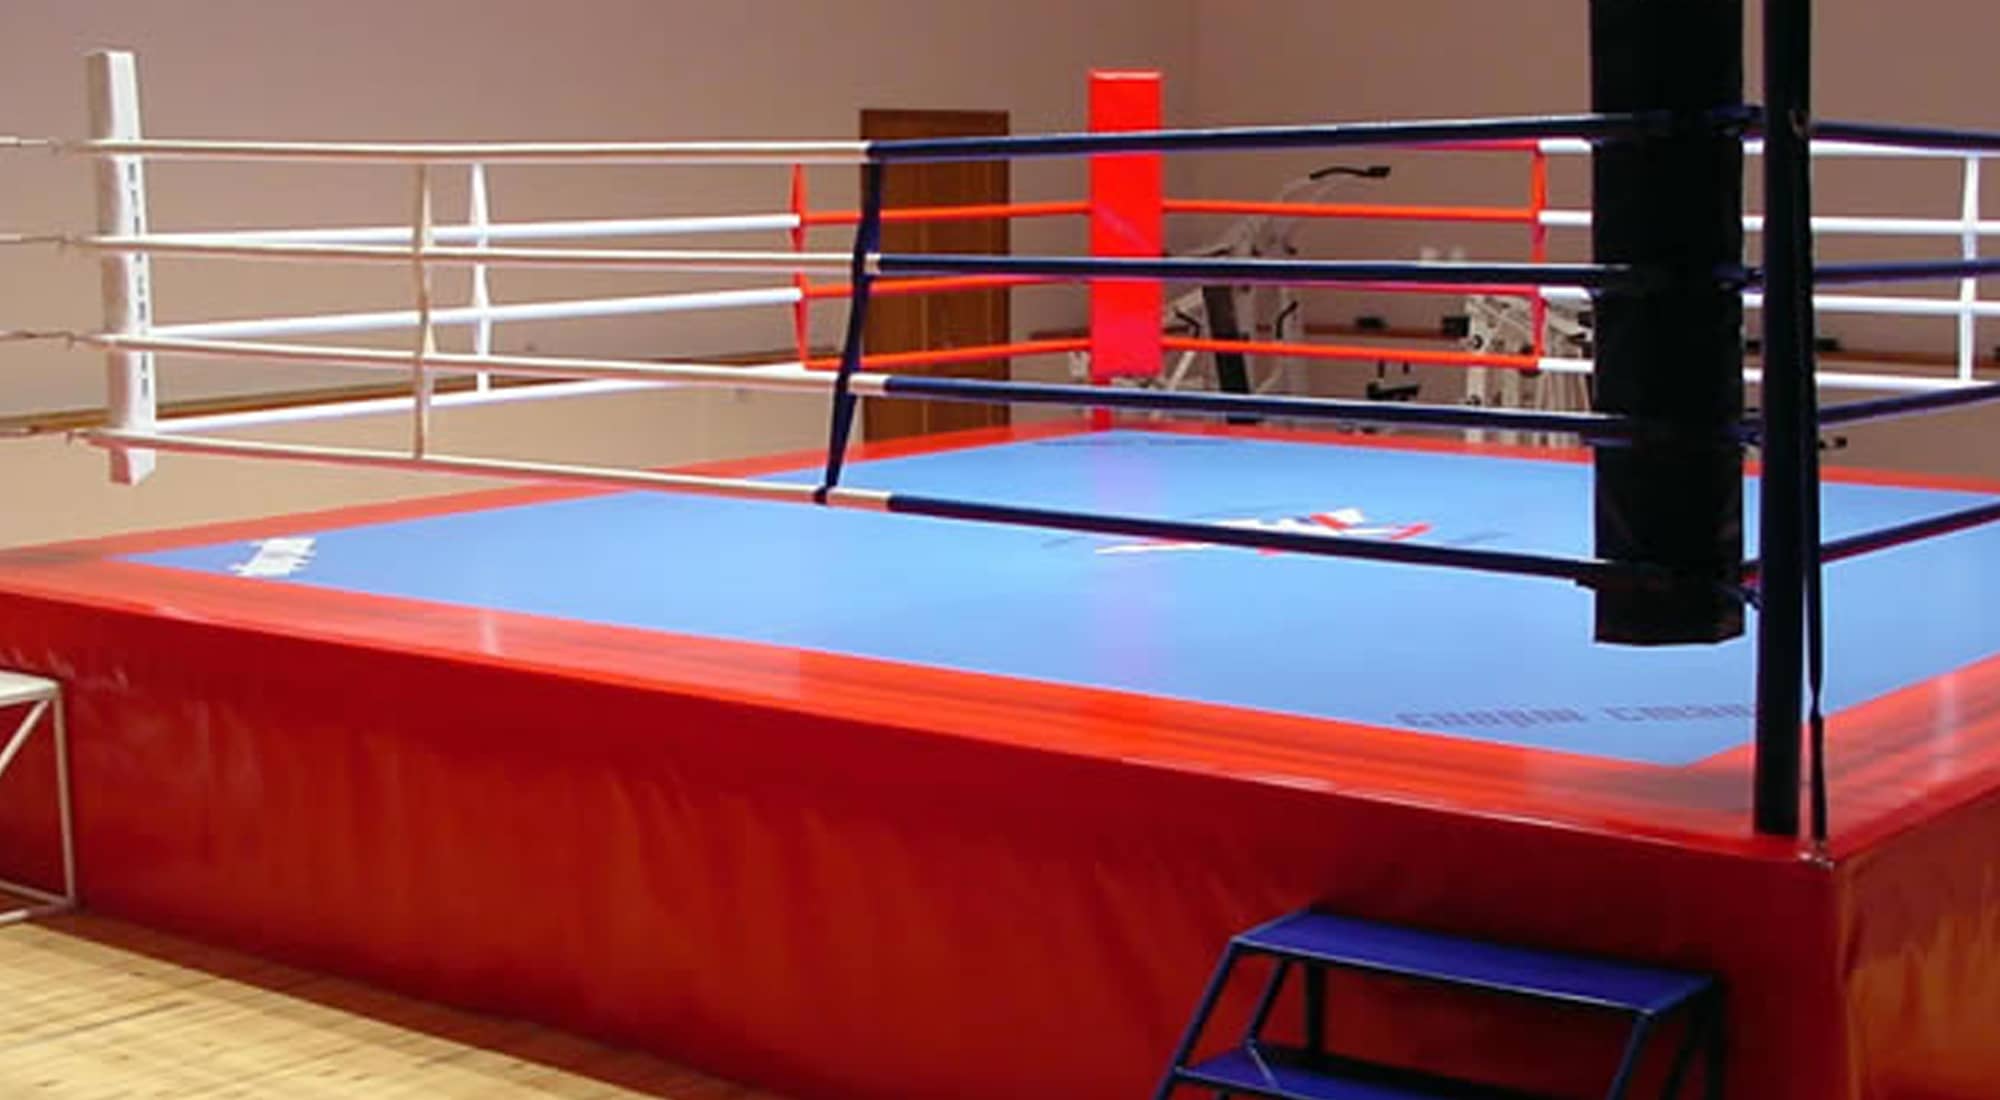 Боксерский ринг на помосте 1 м Totalbox размер по канатам 4×4 м РП 4-1 2000_1100